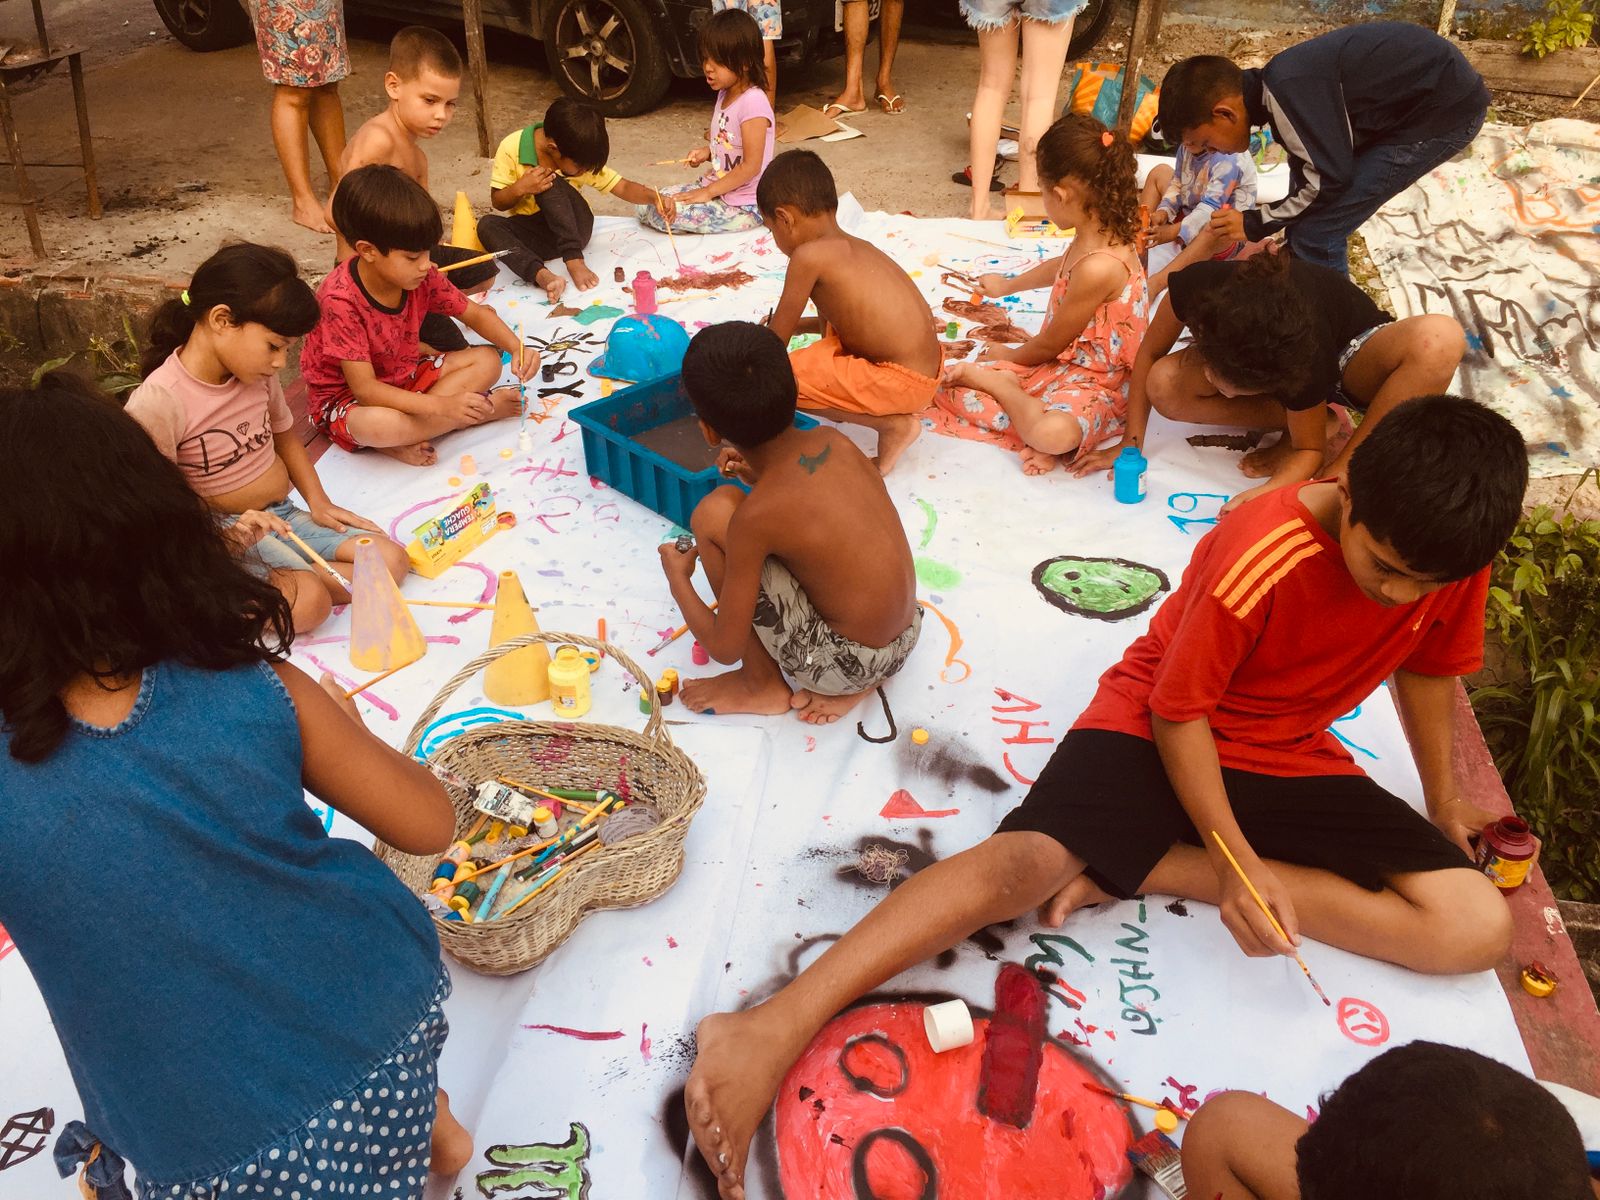 Coletivo Arte Ocupa promove evento cultural na periferia de Manaus